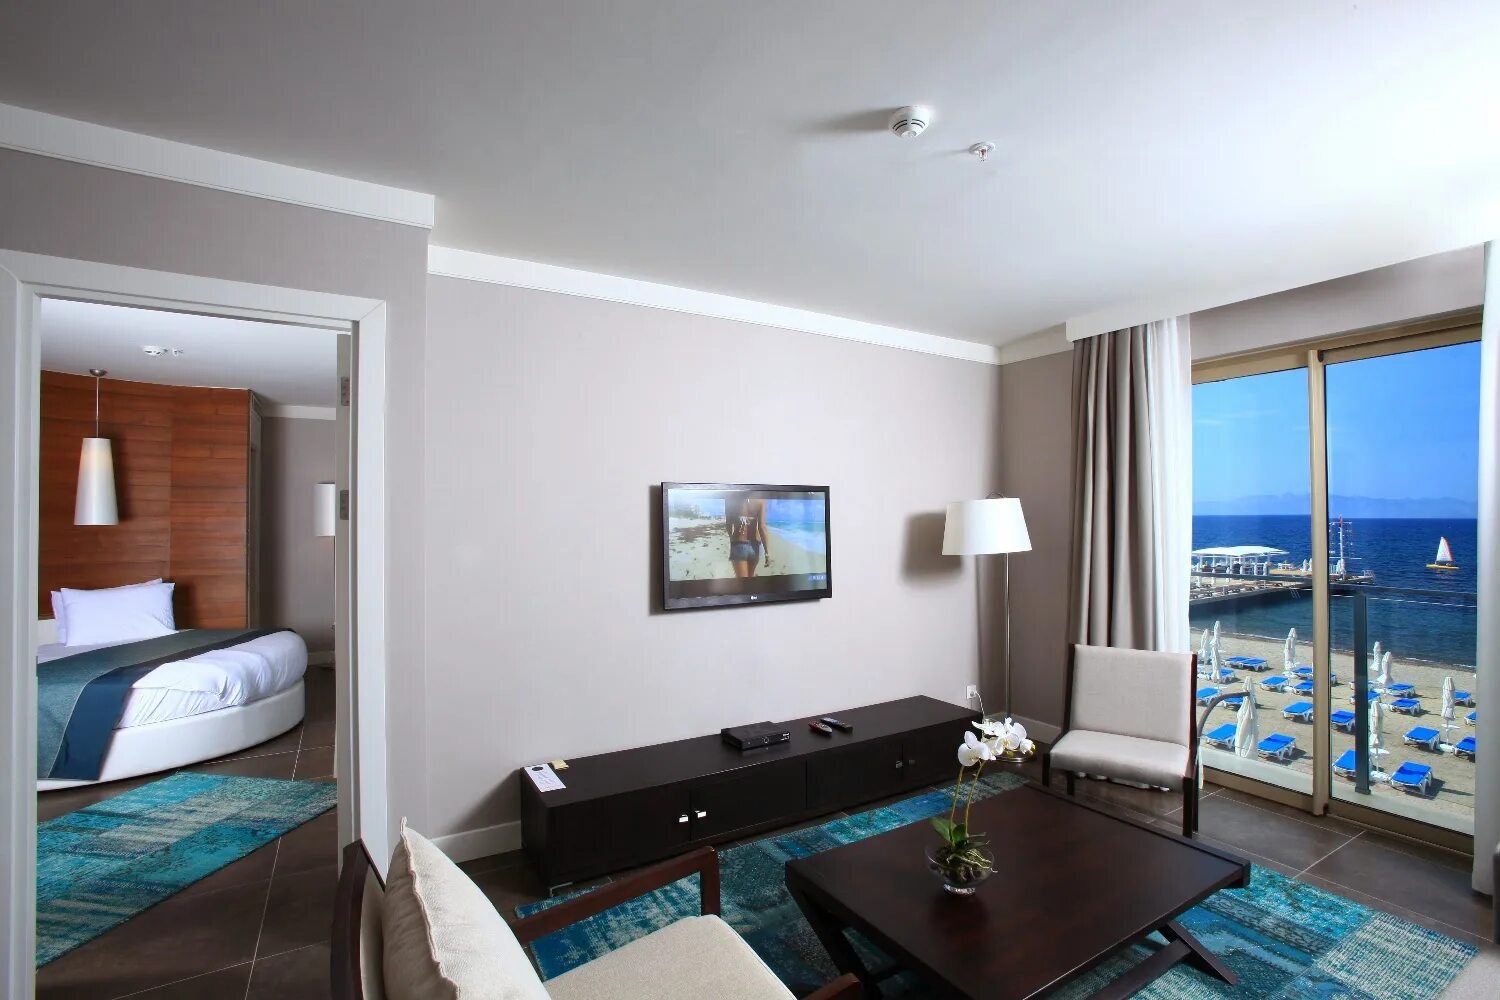 Турция отель с двумя комнатами. Sunrise Marina Suites Hotel turgutreis. RIA Suites Hotel 3*. Valente Suites Hotel Turkey. Ria suites hotel